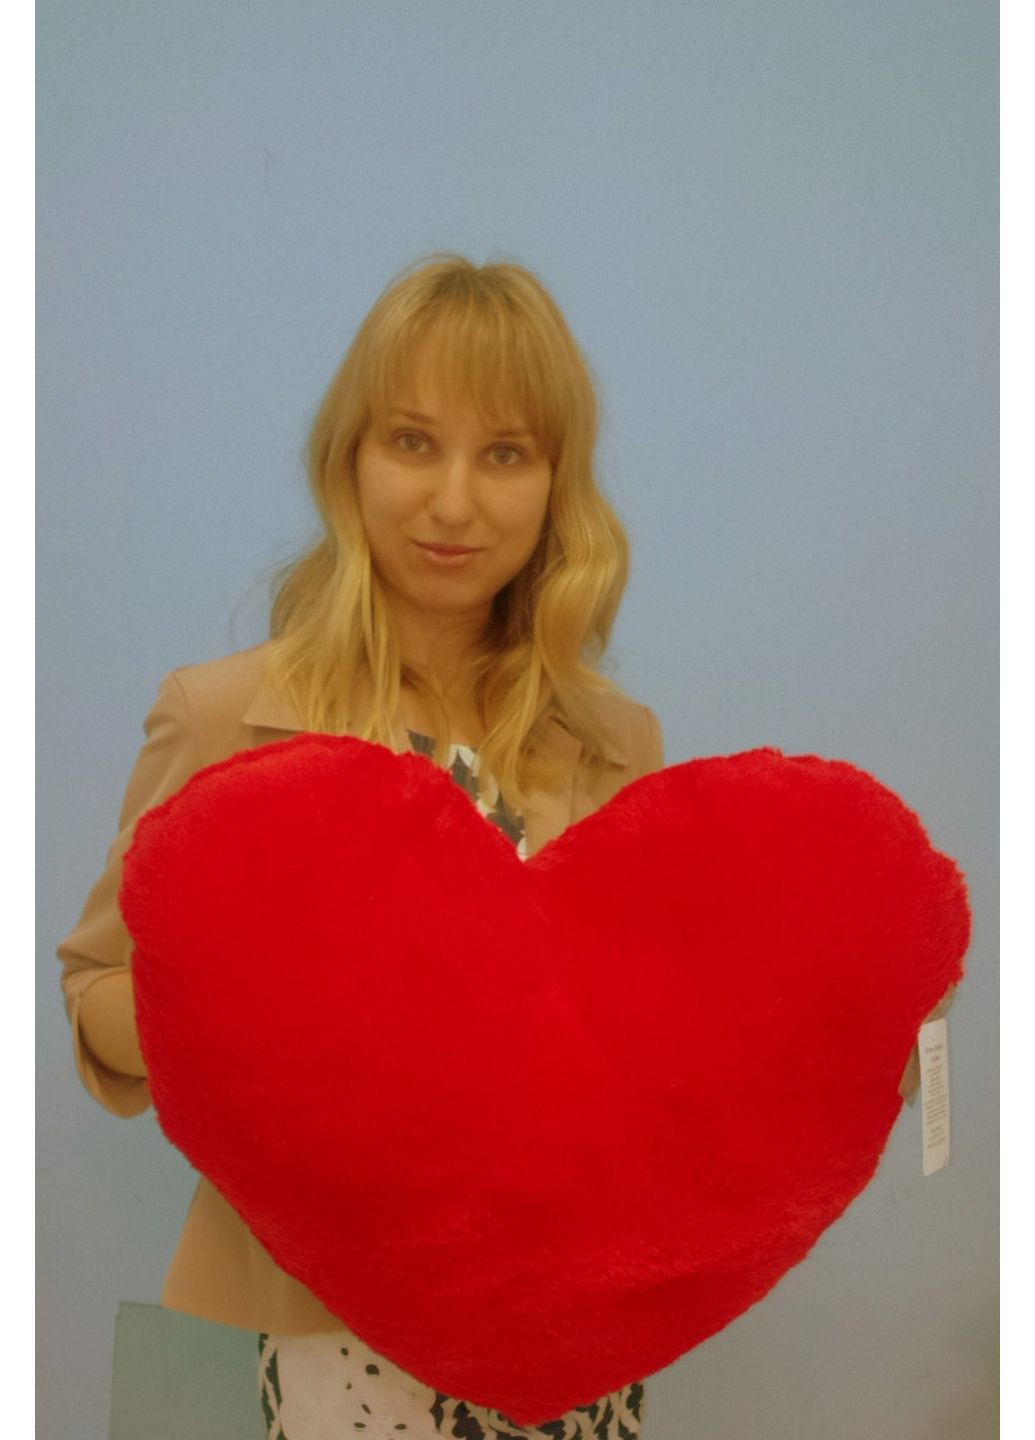 Игрушка подушка сердце 50 см красный Alina (282592278)